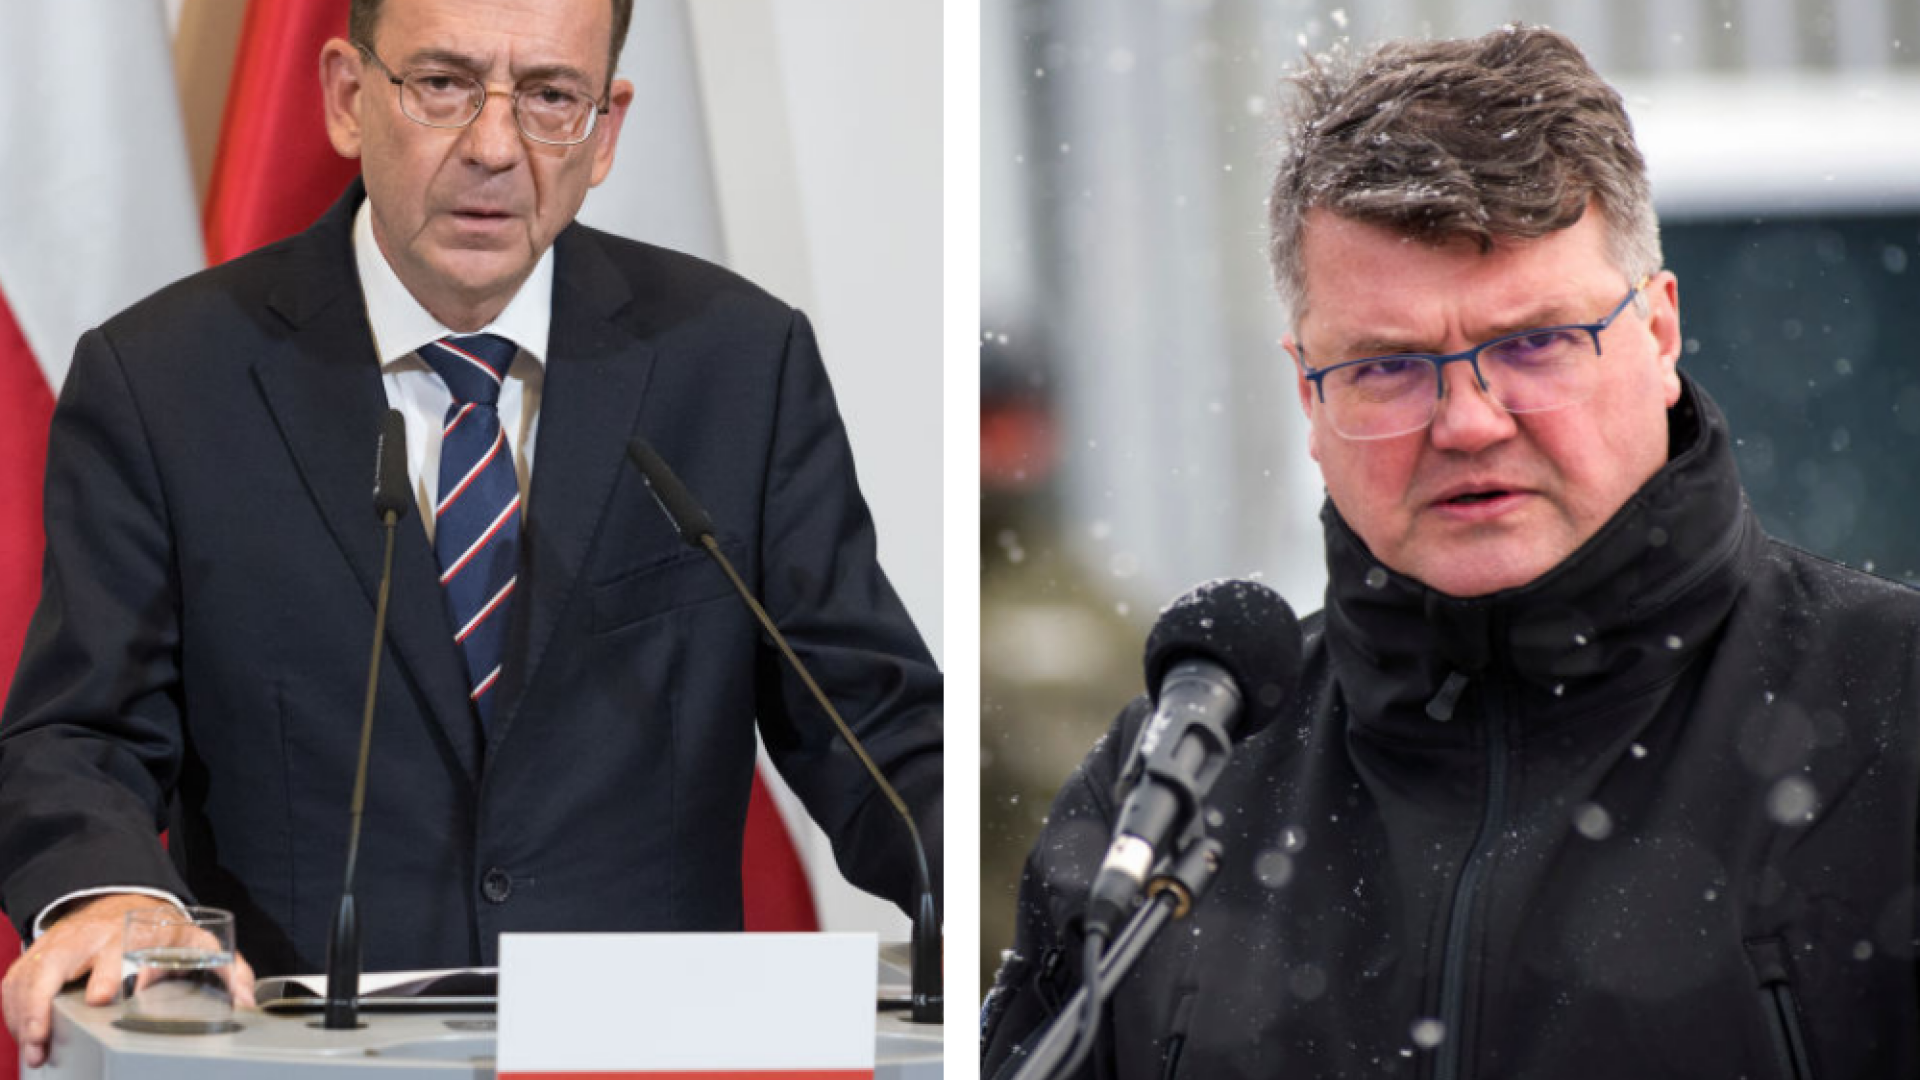 ministri polonezi inchisoare